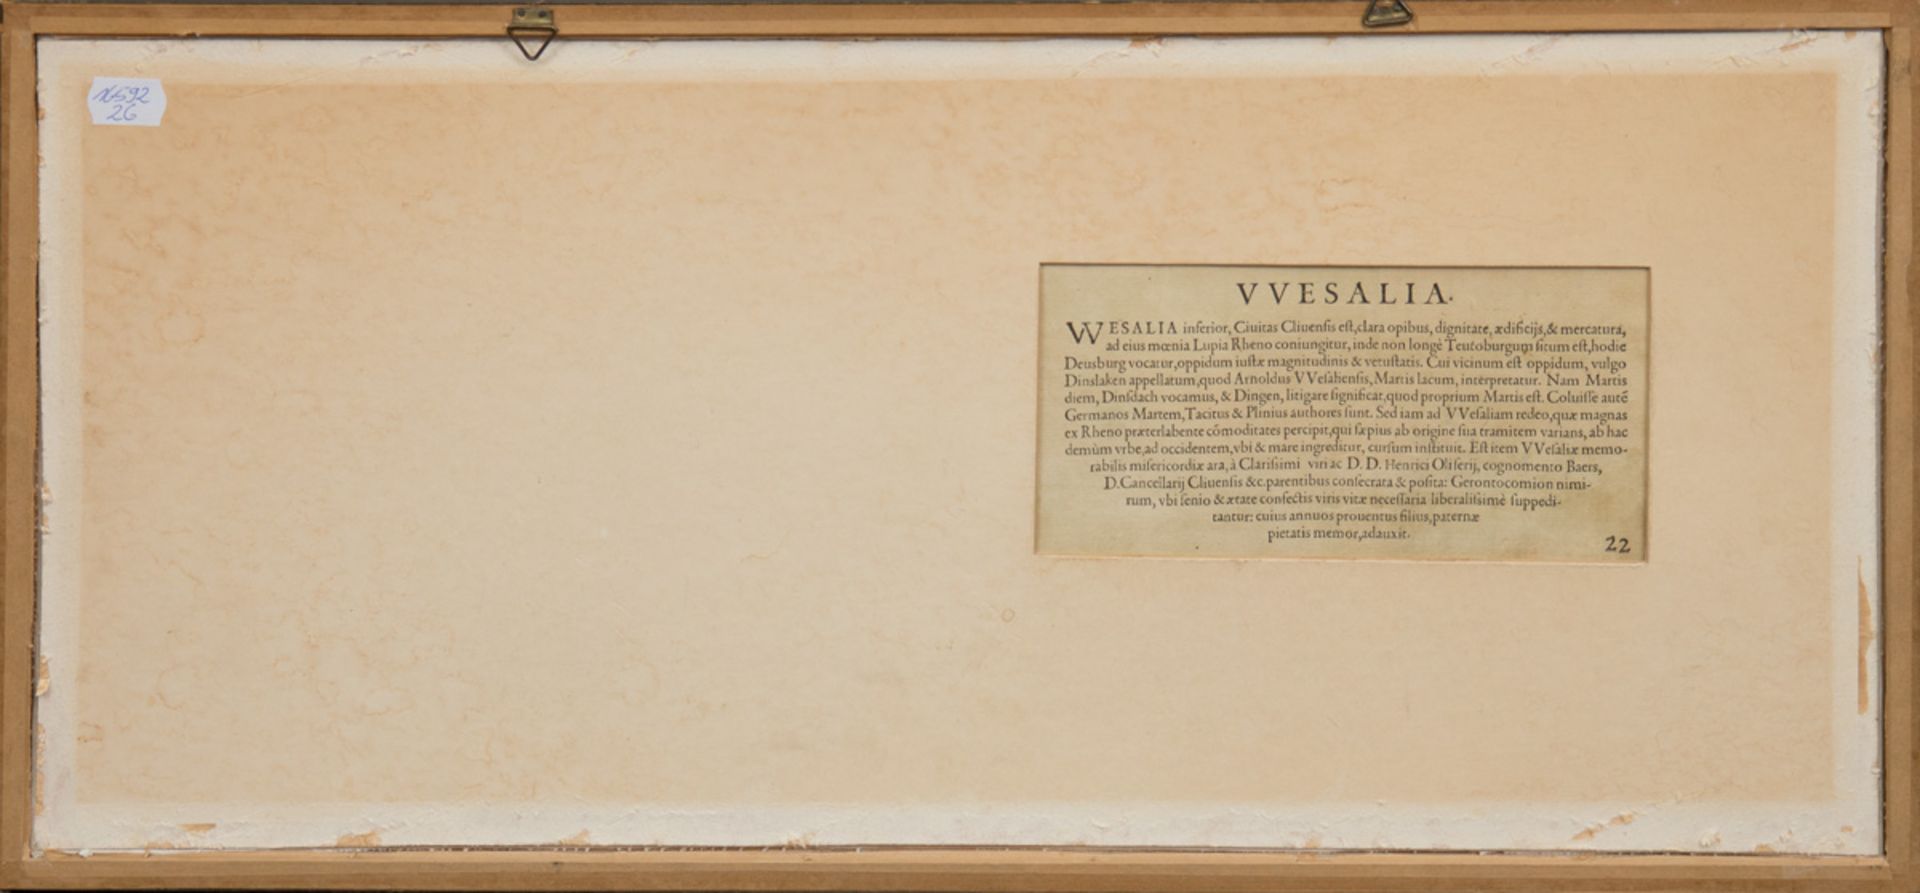 Altkolorierter Kupferstich "Wesalia Inferior-Ansicht von Wesel", rückseitig lateinischer Text, Gebr - Bild 2 aus 3